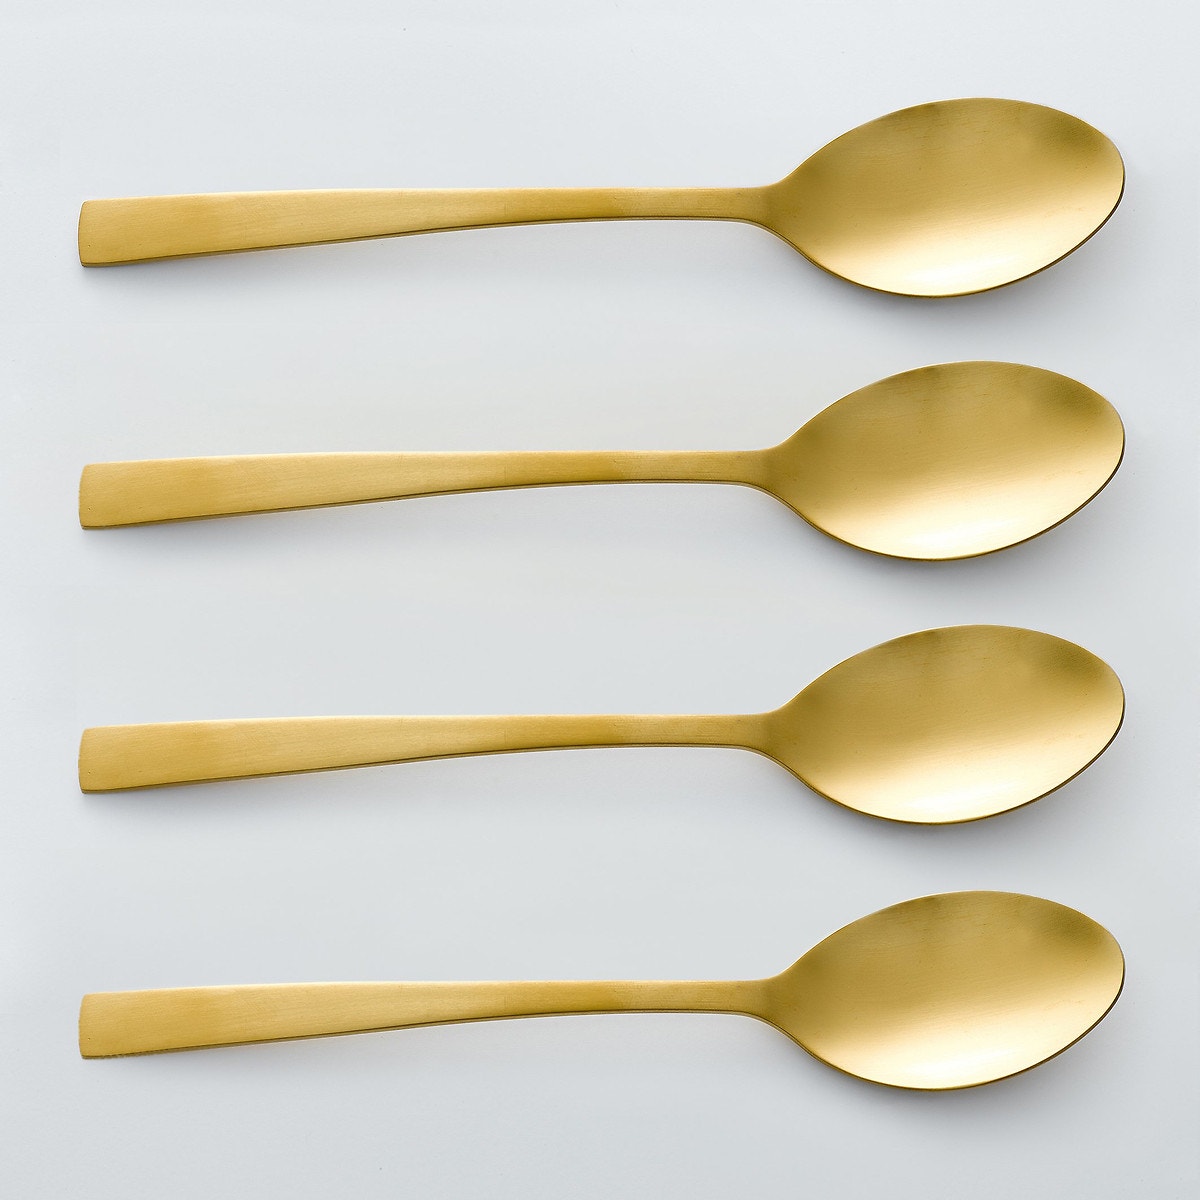 Ανοξείδωτα κουτάλια της σούπας, σε χρυσό χρώμα, Auberie (σετ των 4)